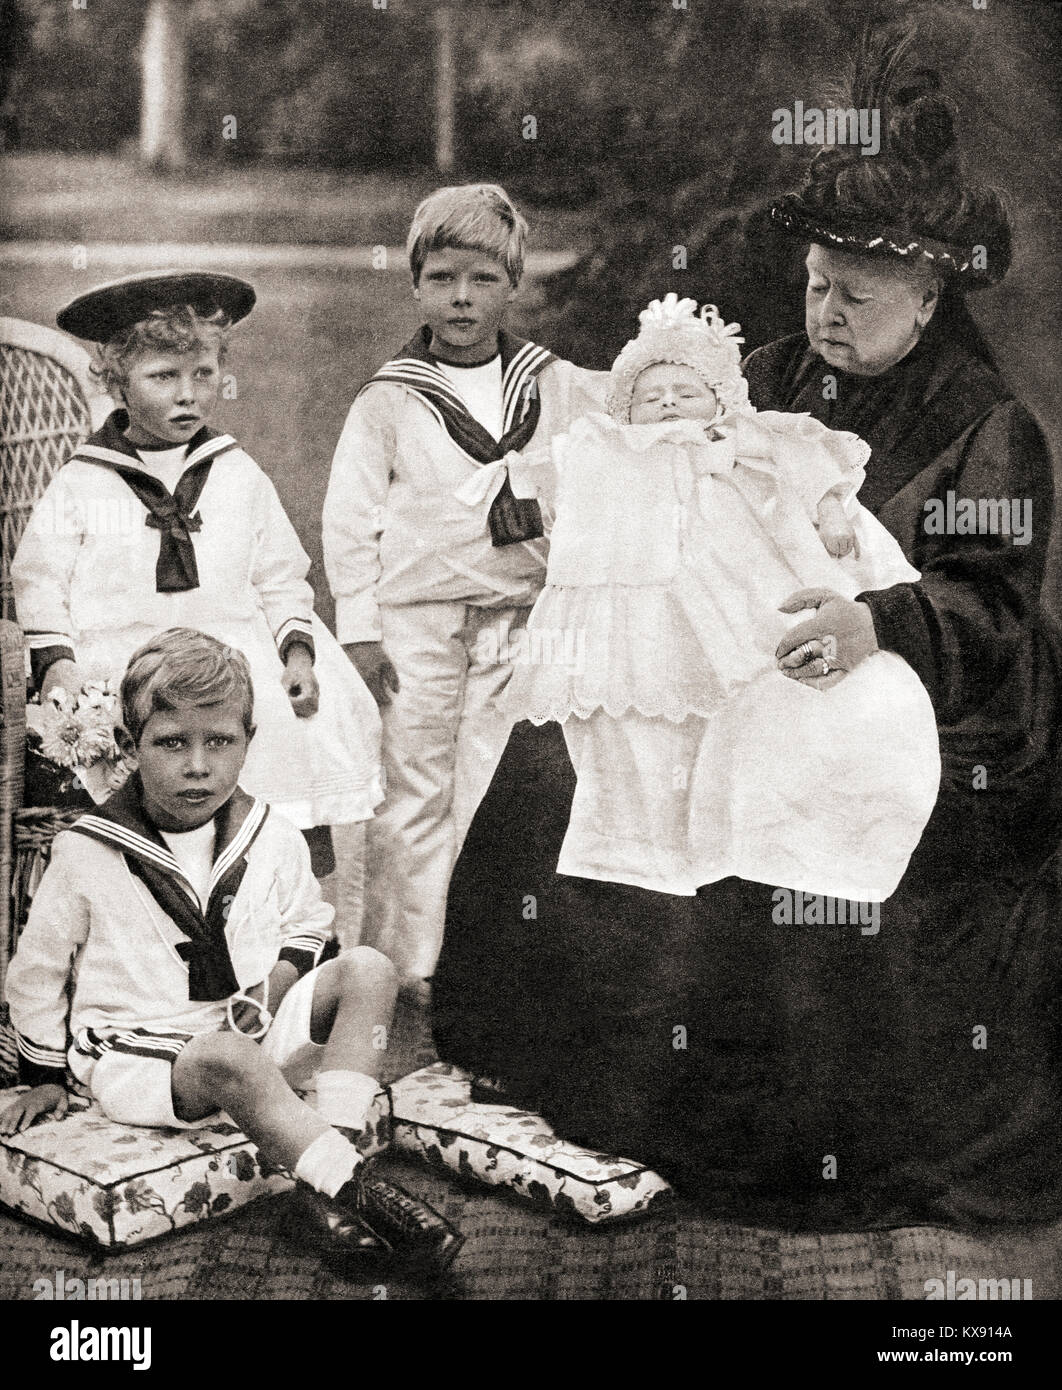 La reine Victoria et ses grands petits-enfants, de gauche à droite, le Prince Albert (futur George VI), la princesse Mary (princesse royale), de l'île (futur Édouard VIII) et le Prince Henry (futur duc de Gloucester), vu ici en 1900. Victoria, 1819 - 1901. La reine du Royaume-Uni de Grande-Bretagne et d'Irlande. Banque D'Images